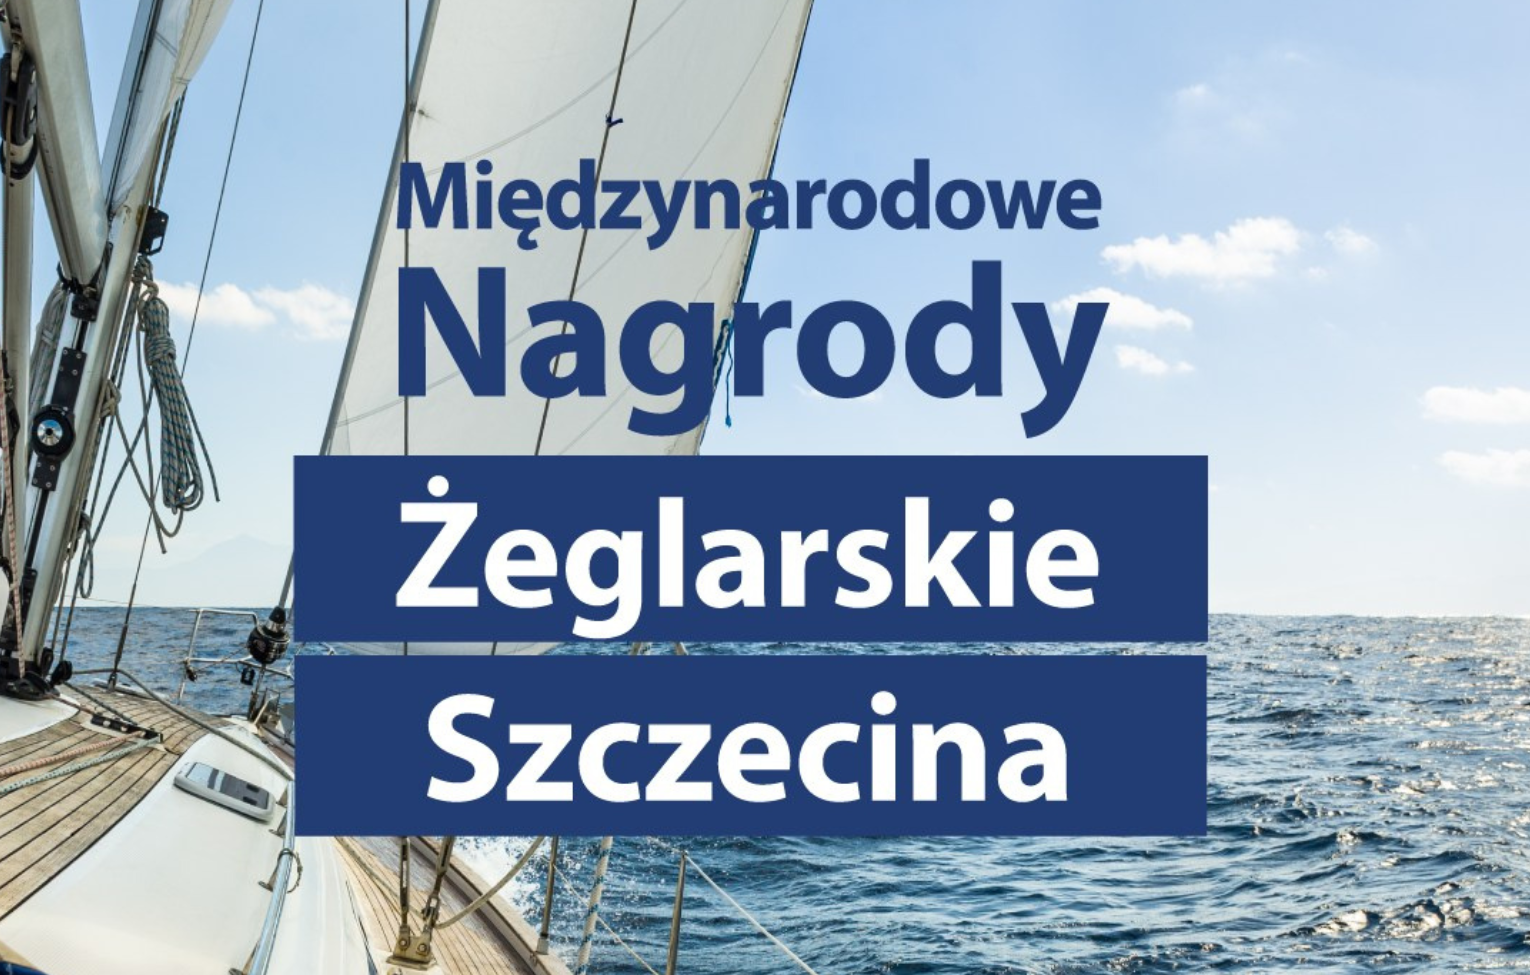 Gala - Międzynarodowe Nagrody Żeglarskie Szczecina 